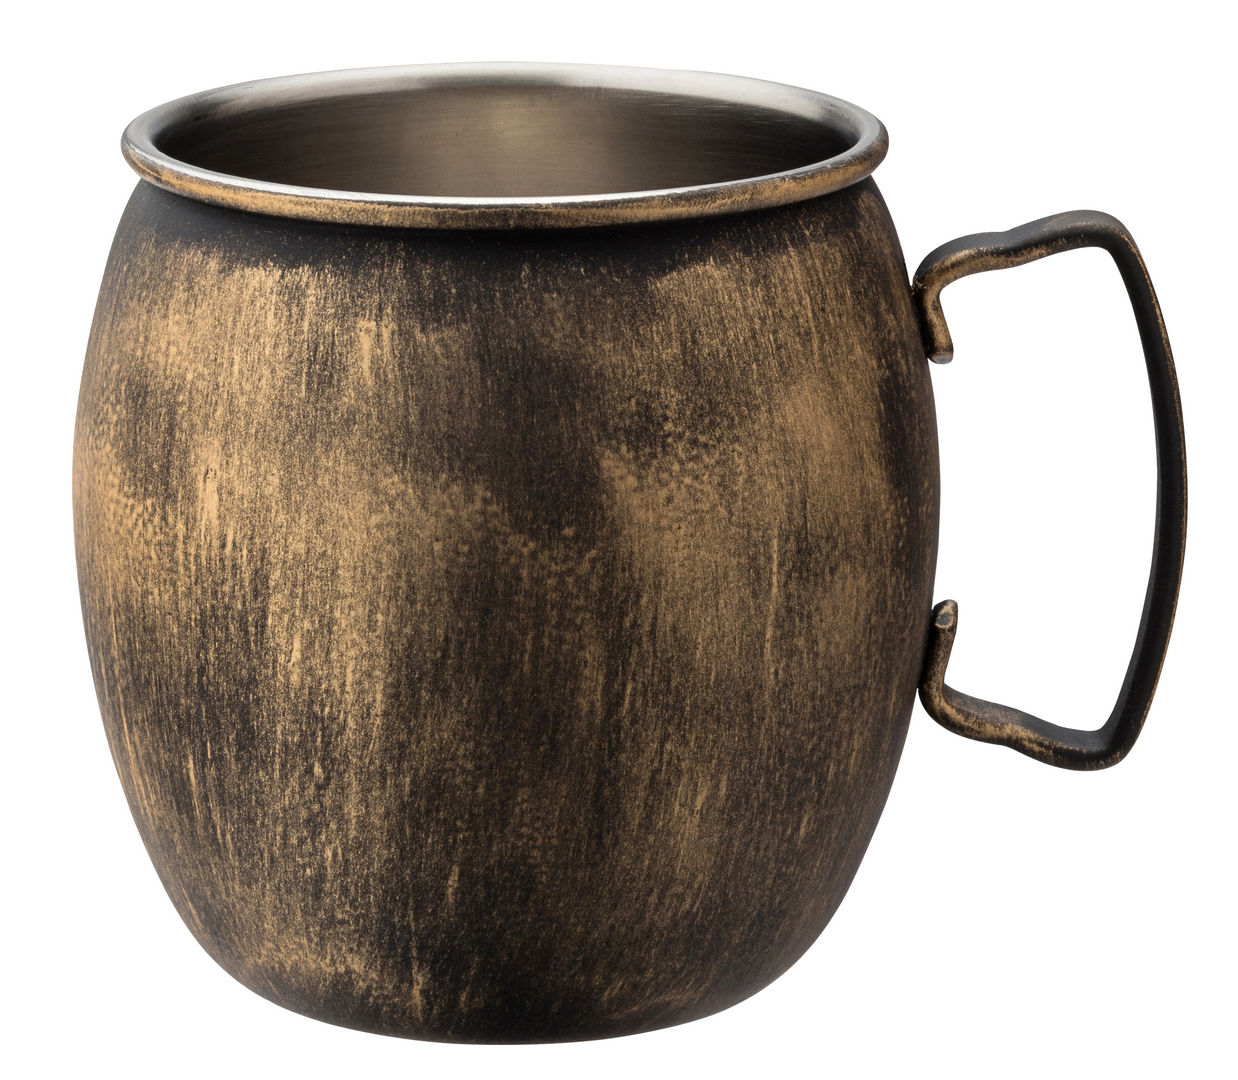 Vintage Copper Mug 24.5oz (62cl) - F94032-000000-B01006 (Pack of 6)